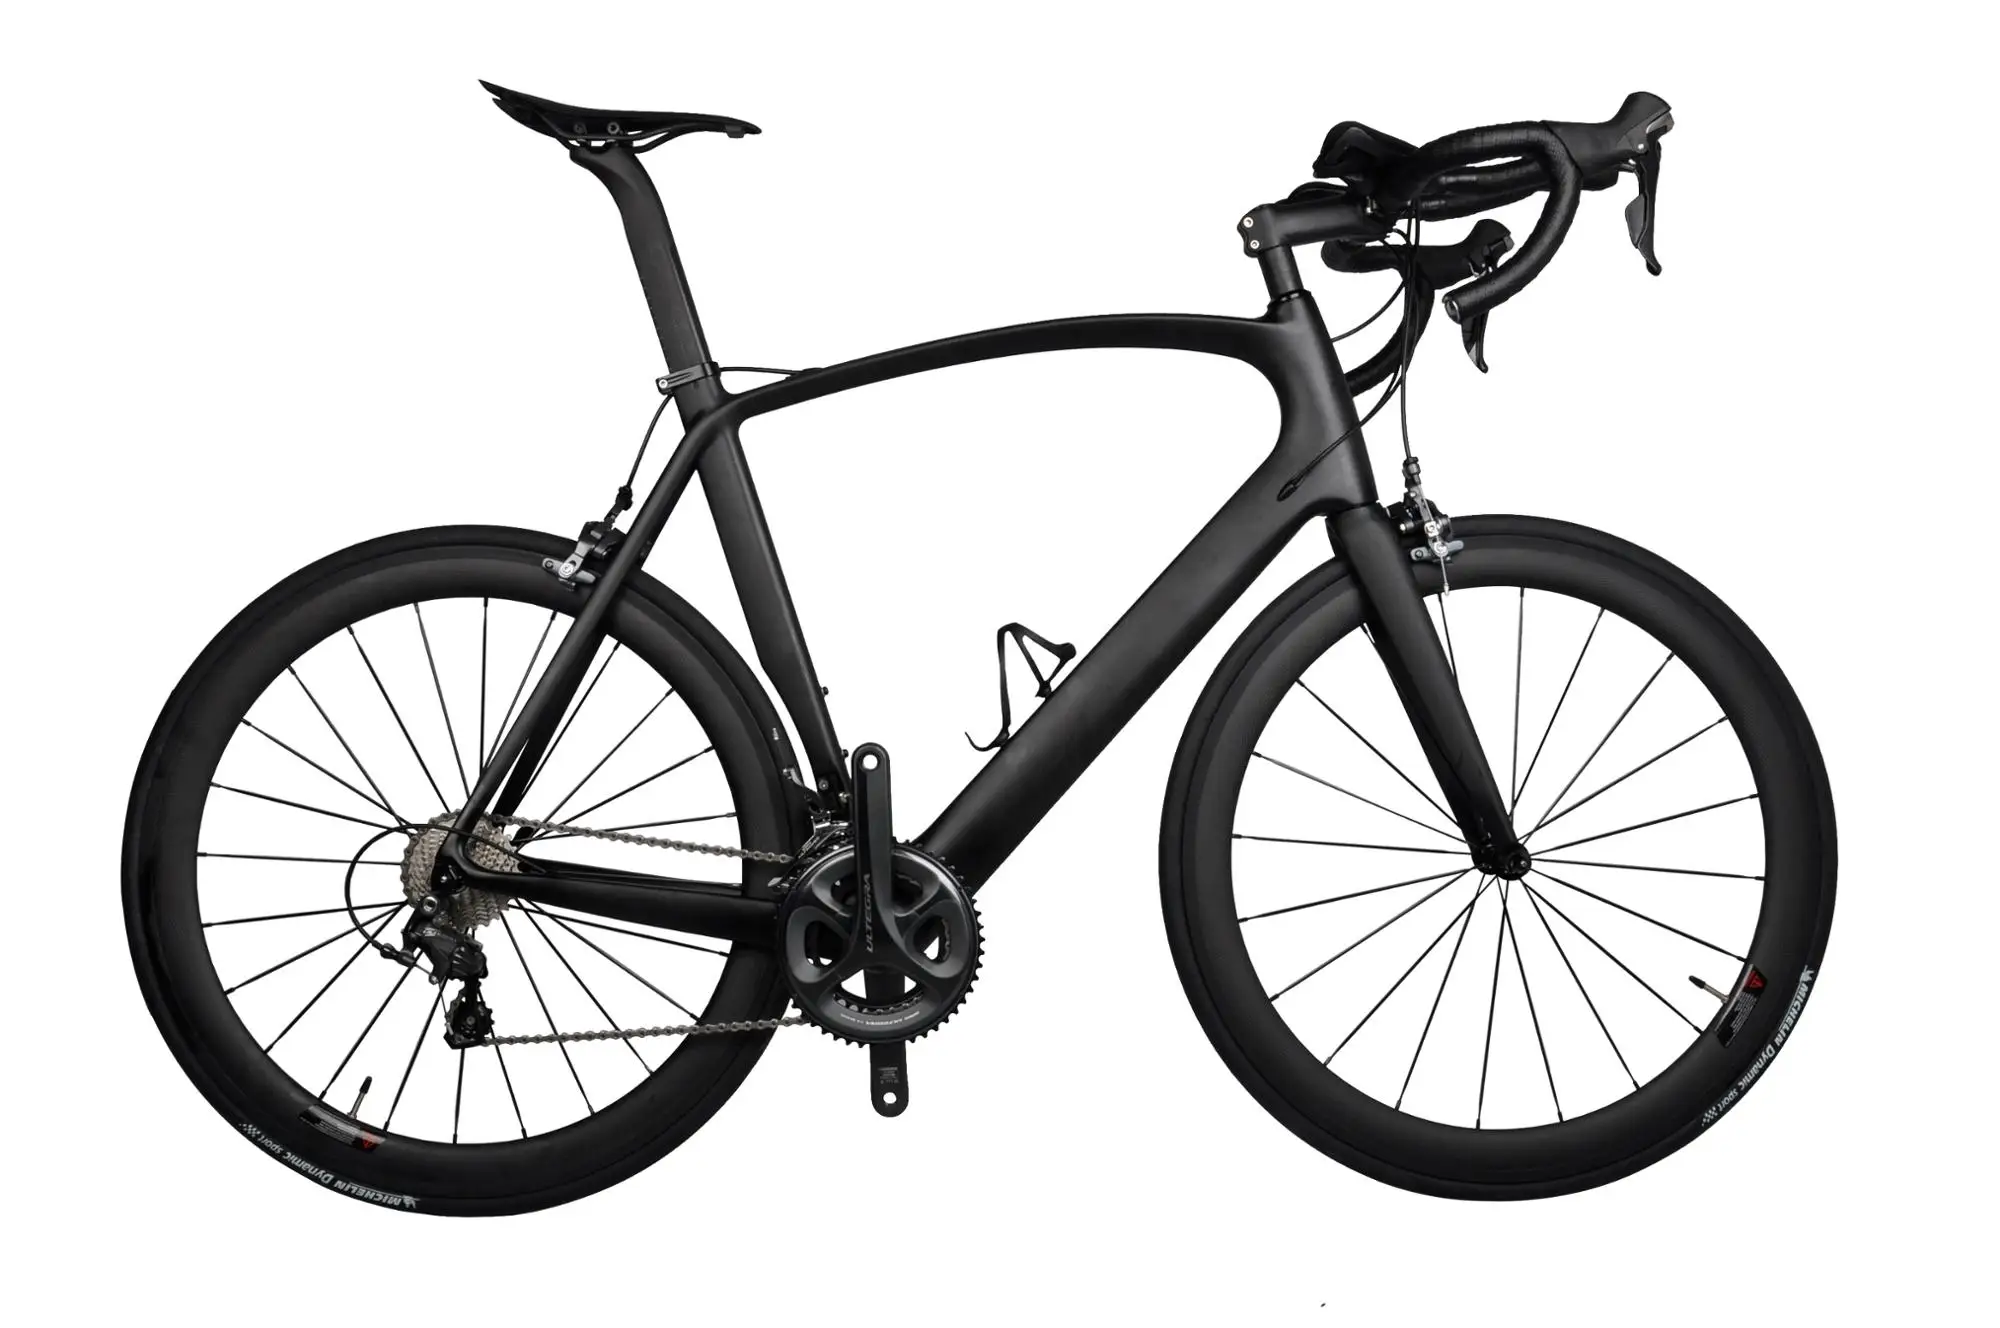  KOWM zxc - Bicicletas de fibra de carbono para hombre, bicicleta  de carretera, bicicleta de carreras, marco de fibra de carbono con kit de  velocidad, peso ligero (color negro) : Deportes